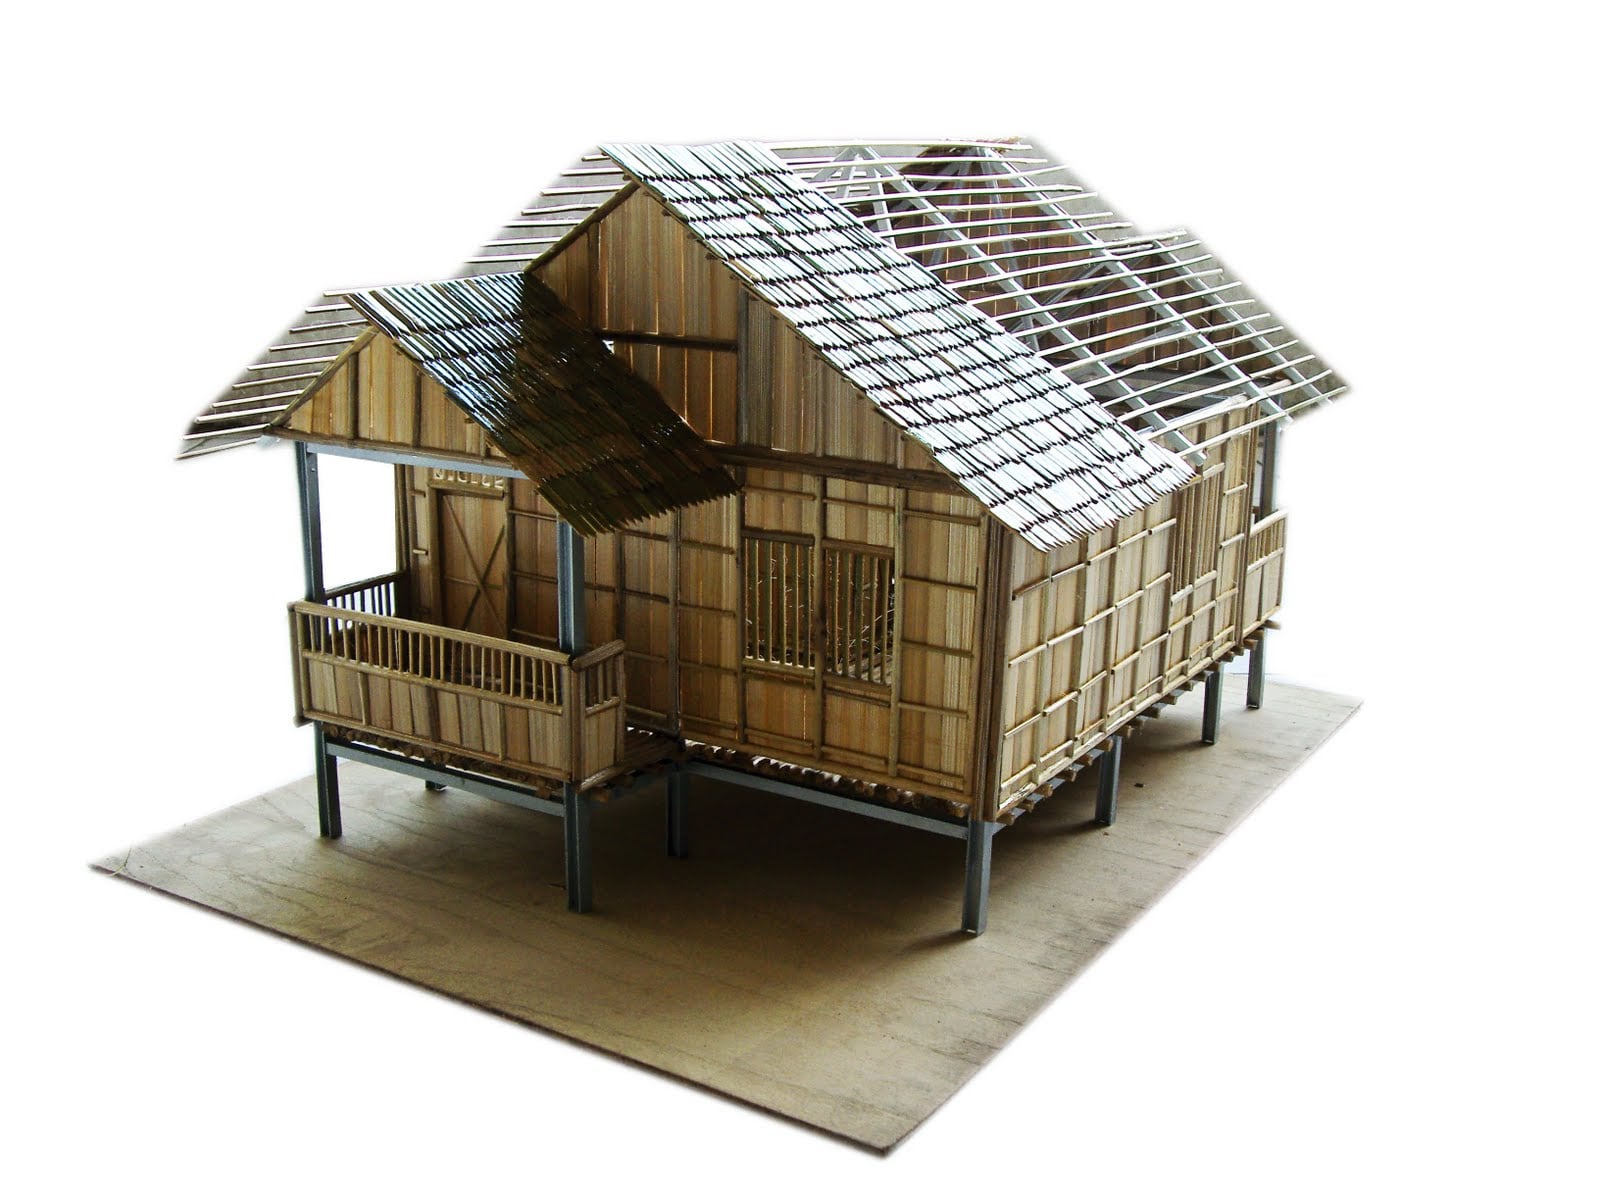 81 Ragam Desain Rumah Klasik Dari Bambu Terbaru Dan Terlengkap